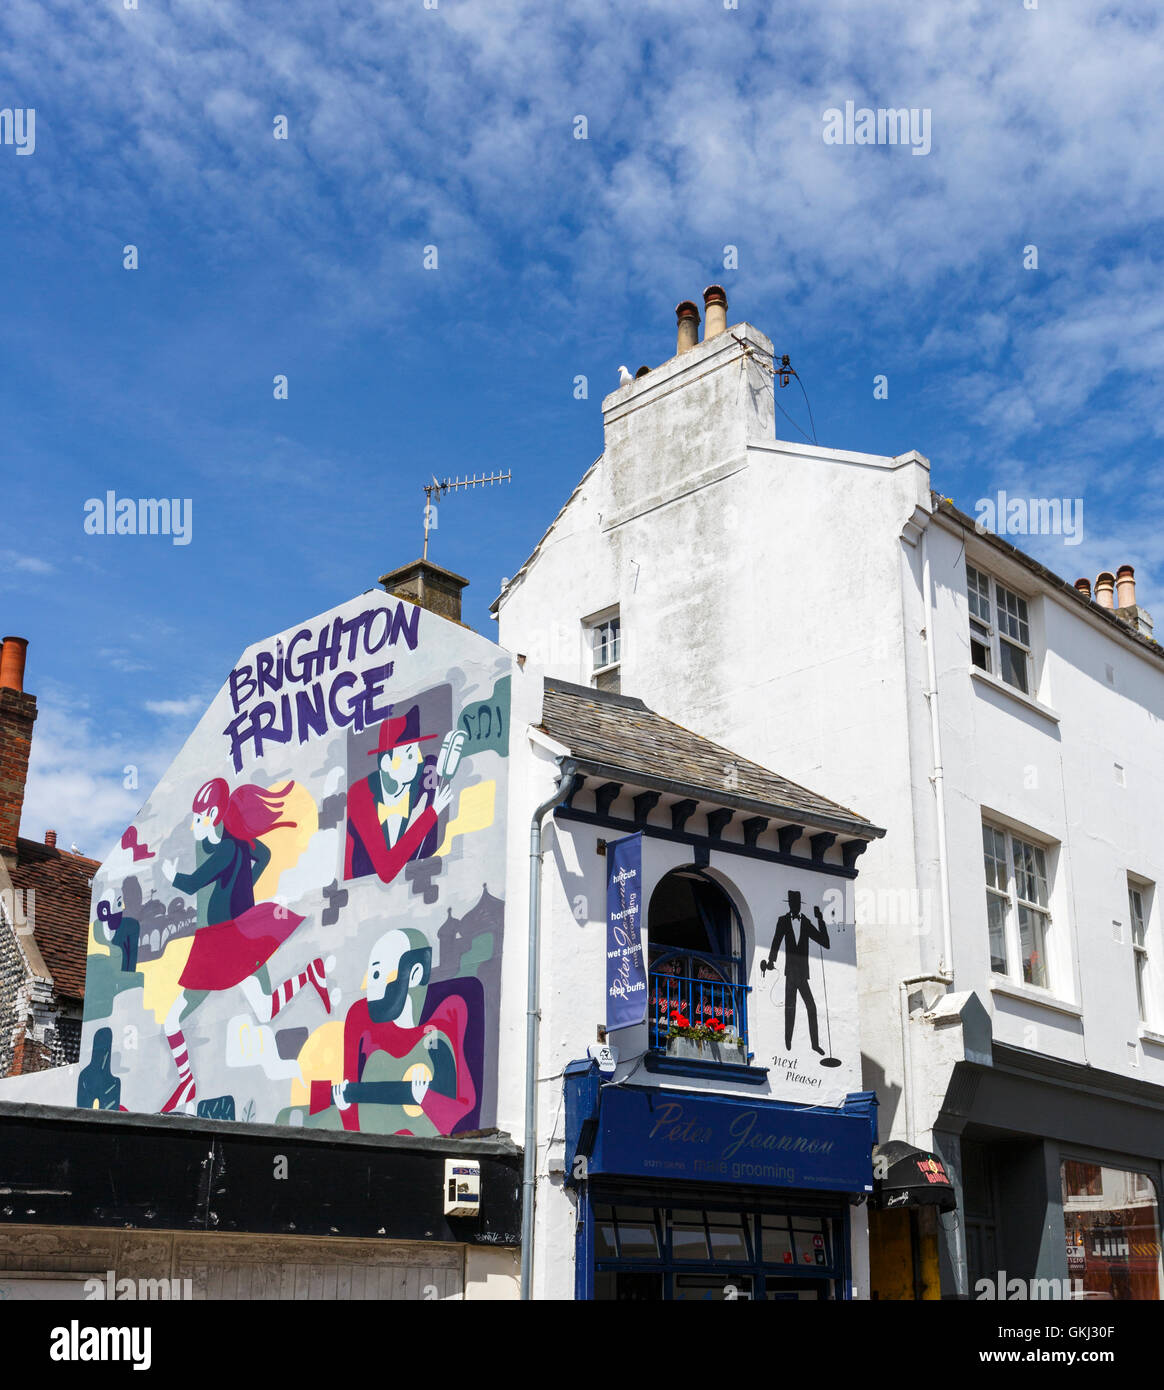 La publicité murale Brighton Fringe arts festival dans les Lanes, Brighton, East Sussex, Royaume-Uni sur une journée ensoleillée avec ciel bleu Banque D'Images